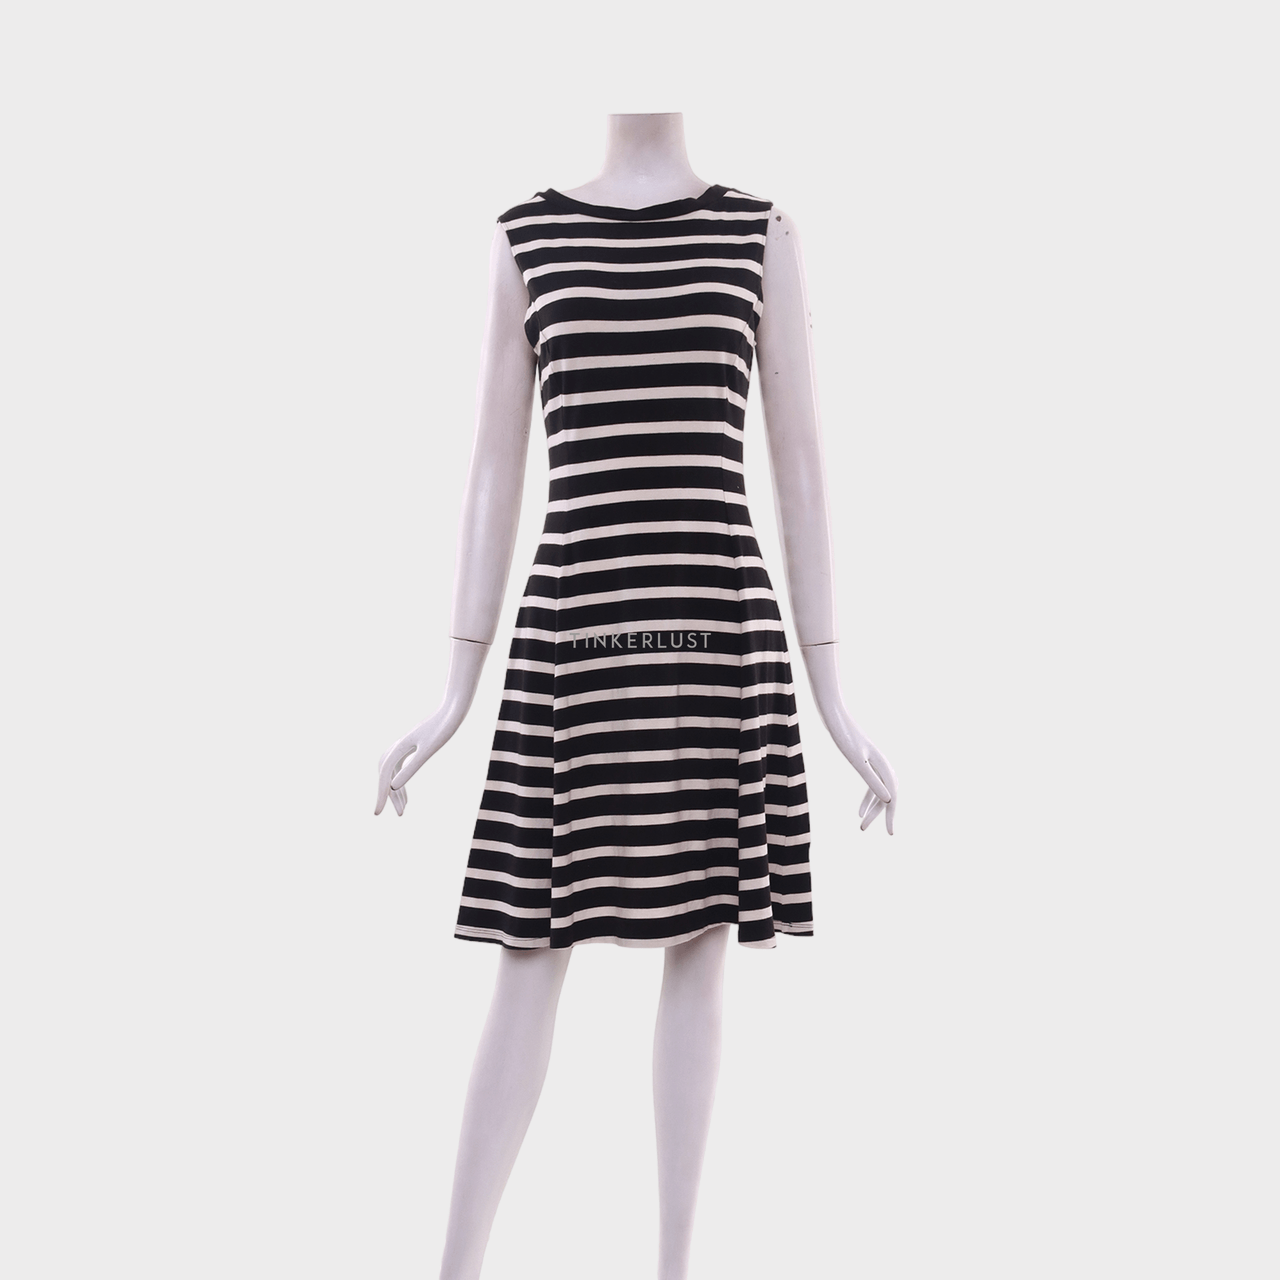 UNIQLO Black & White Stripes Mini Dress